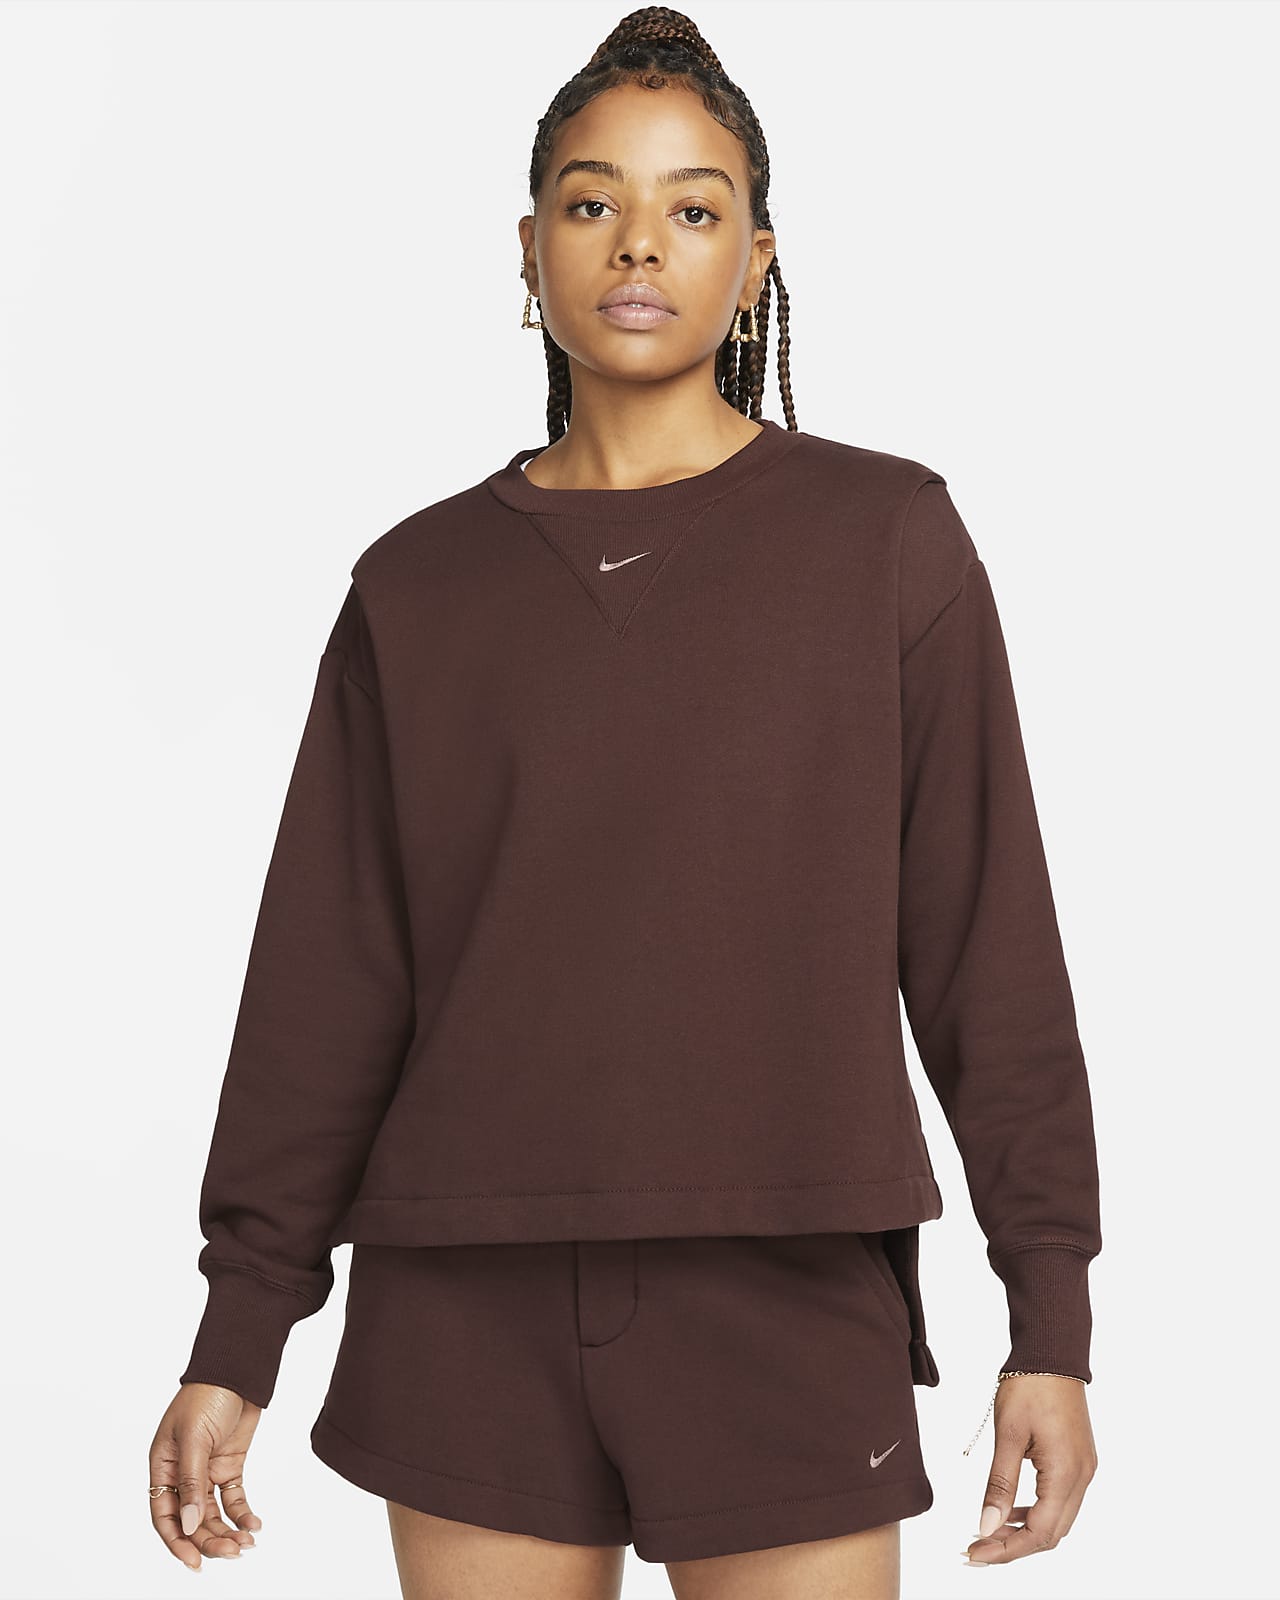 Nike Sportswear Fleece Women's French Terry Sweatshirt. Nike.com